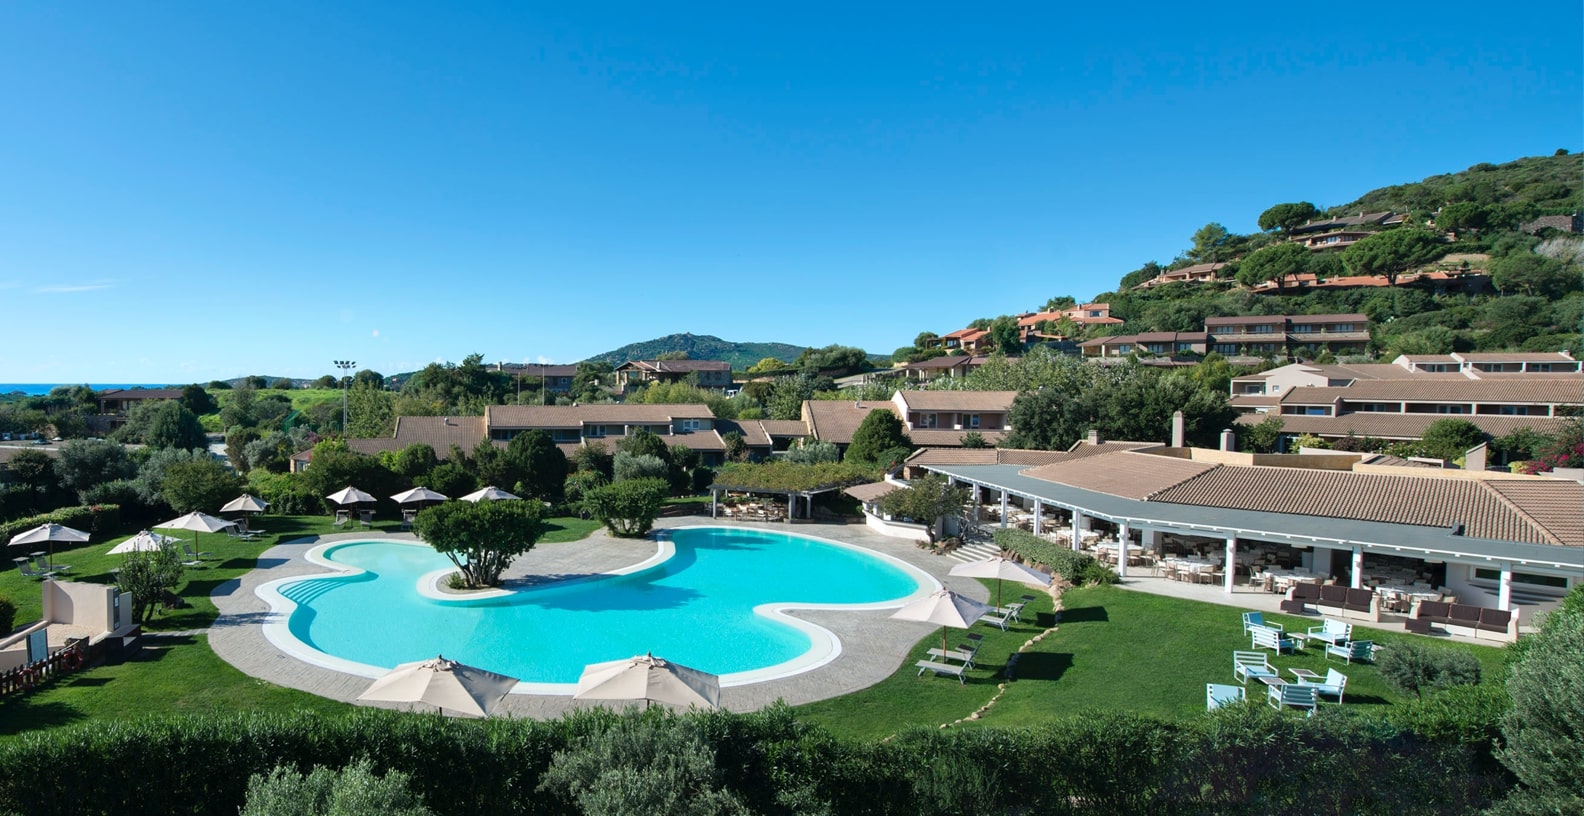 Hotel Village a Chia: Hotel in sud Sardegna - Domus de Maria